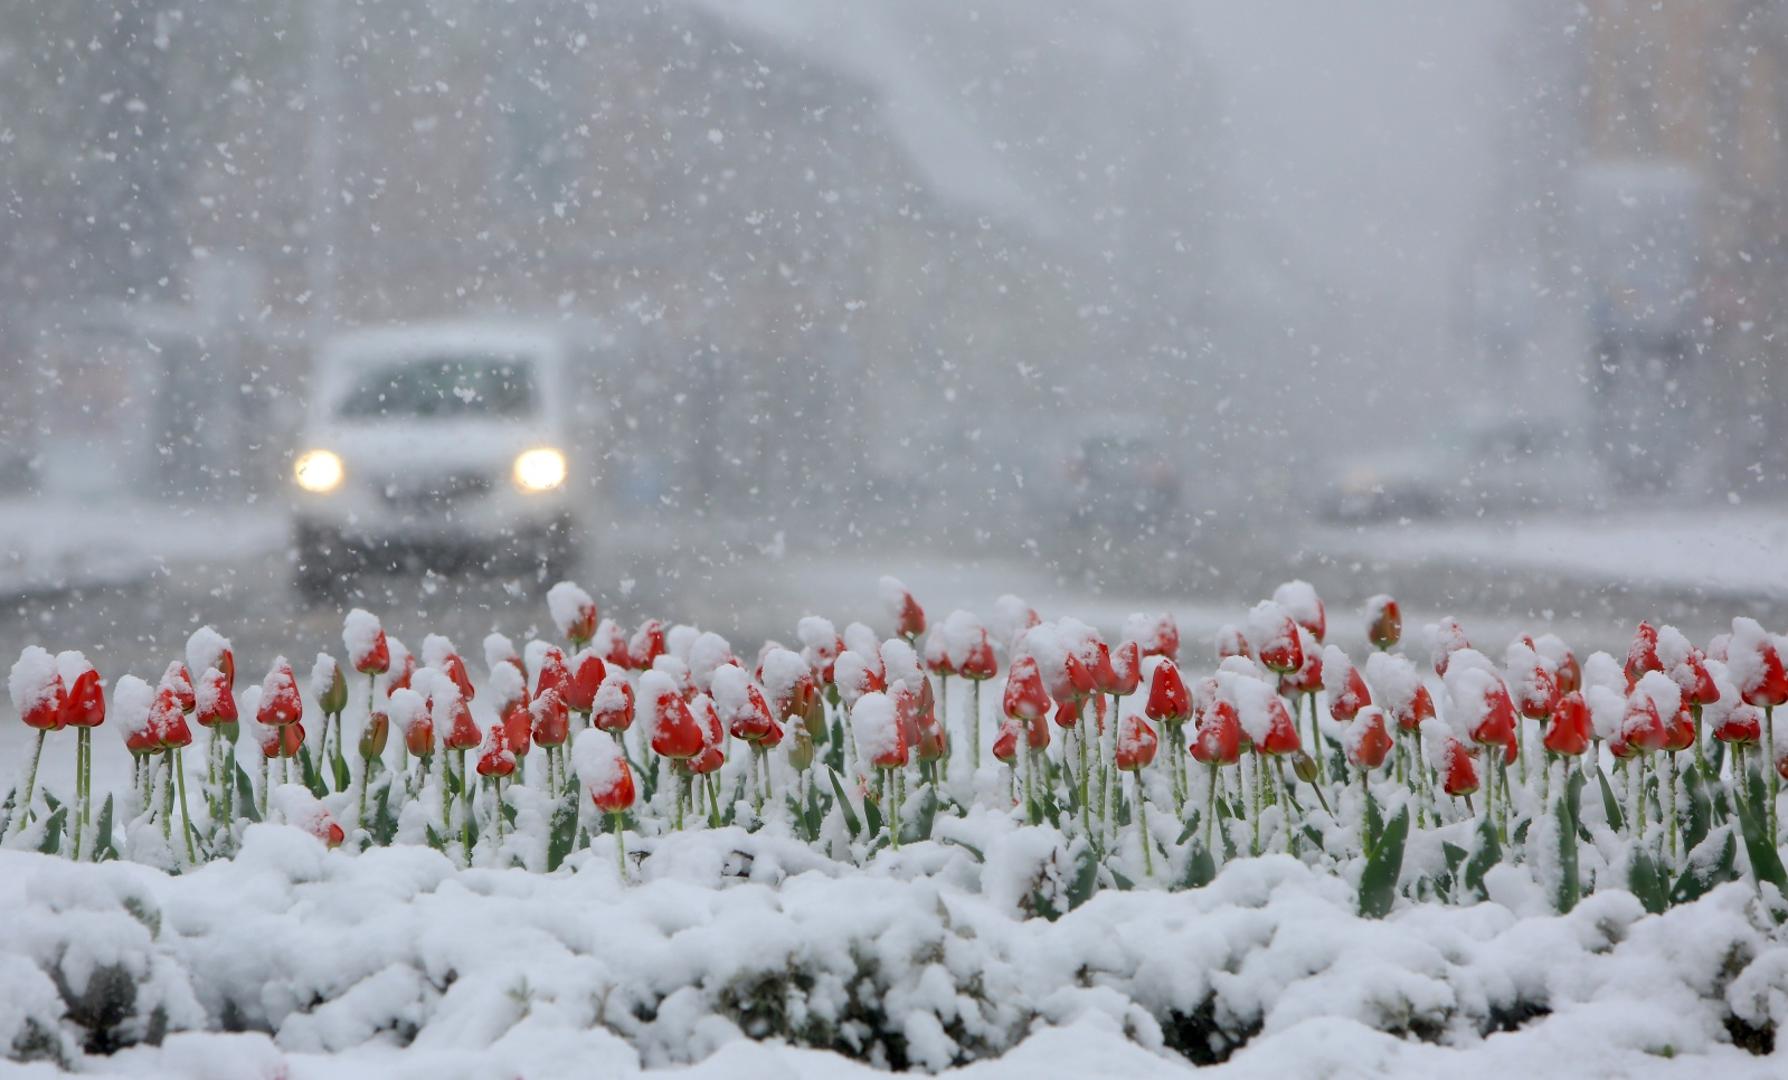 06.04.2021., Karlovac - Od ranih jutarnjih sati u Karlovcu pada gusti snijeg koji je brzo zabijelio prometnice i parkove. Photo: Kristina Stedul Fabac/PIXSELL